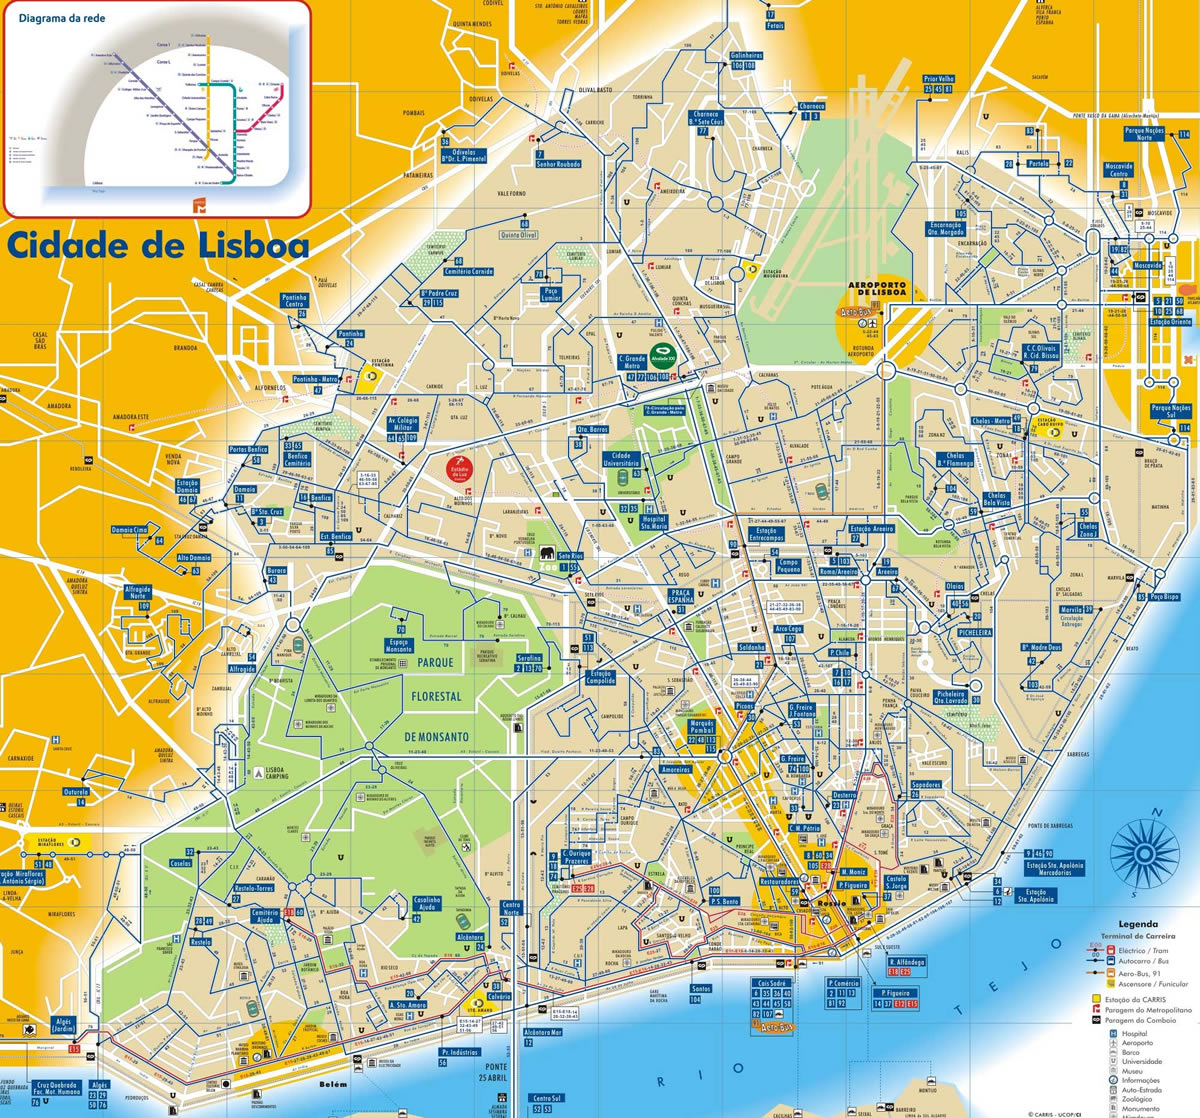 Lisbon city center map